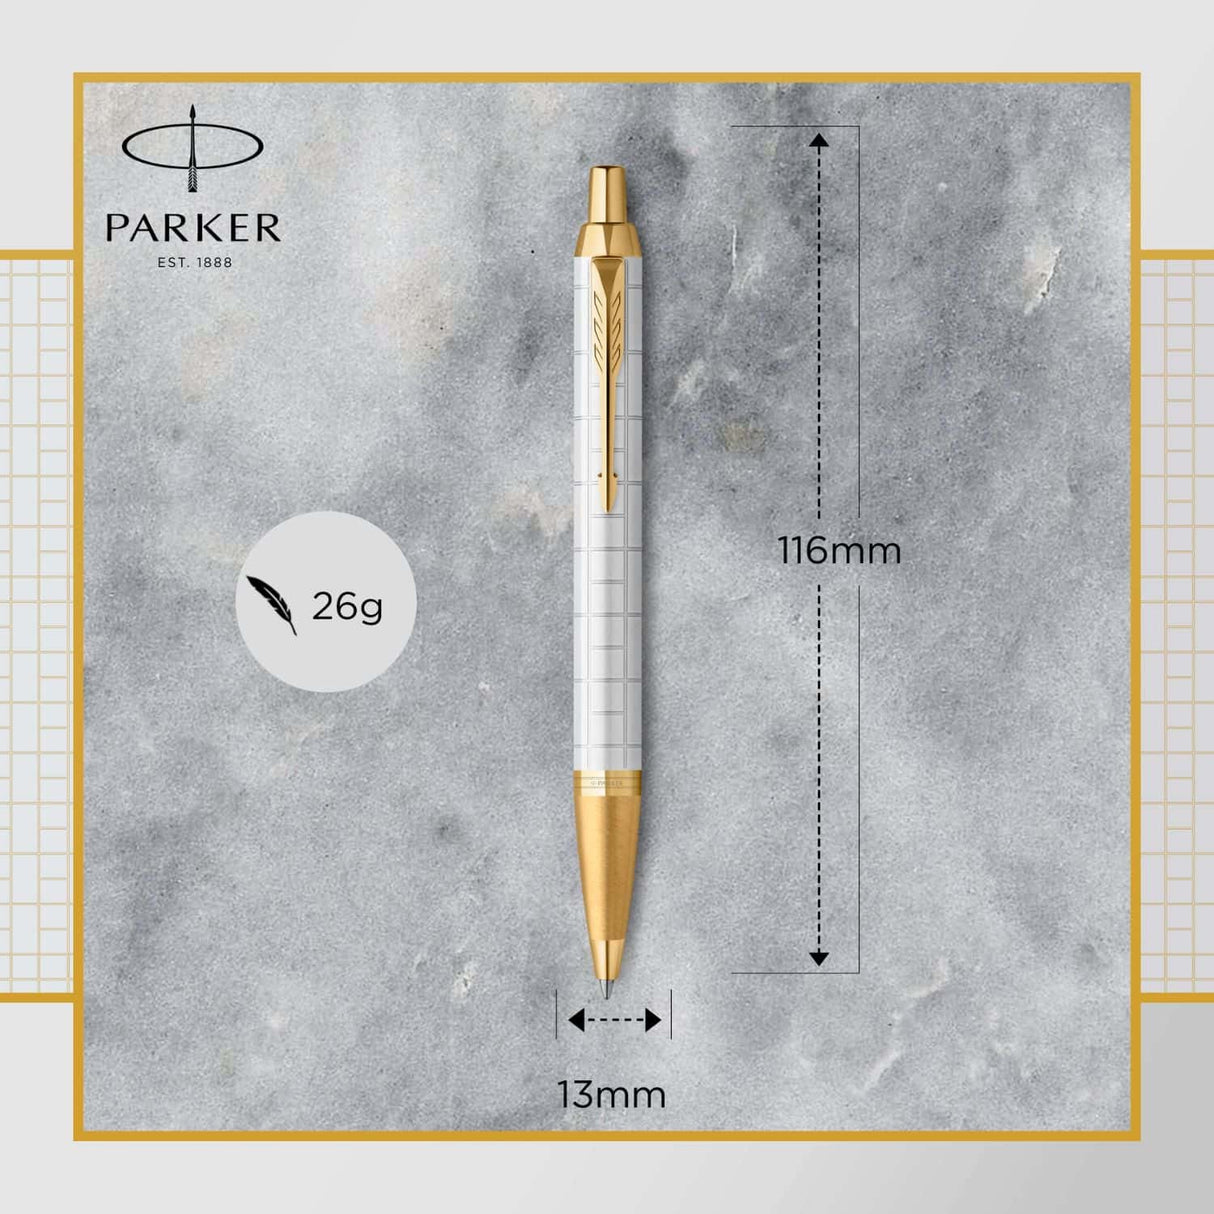 Parker Im Premium - Boligrafo Premium Pearl Lacquer, Gold Trim, Punta Media, Tinta Azul